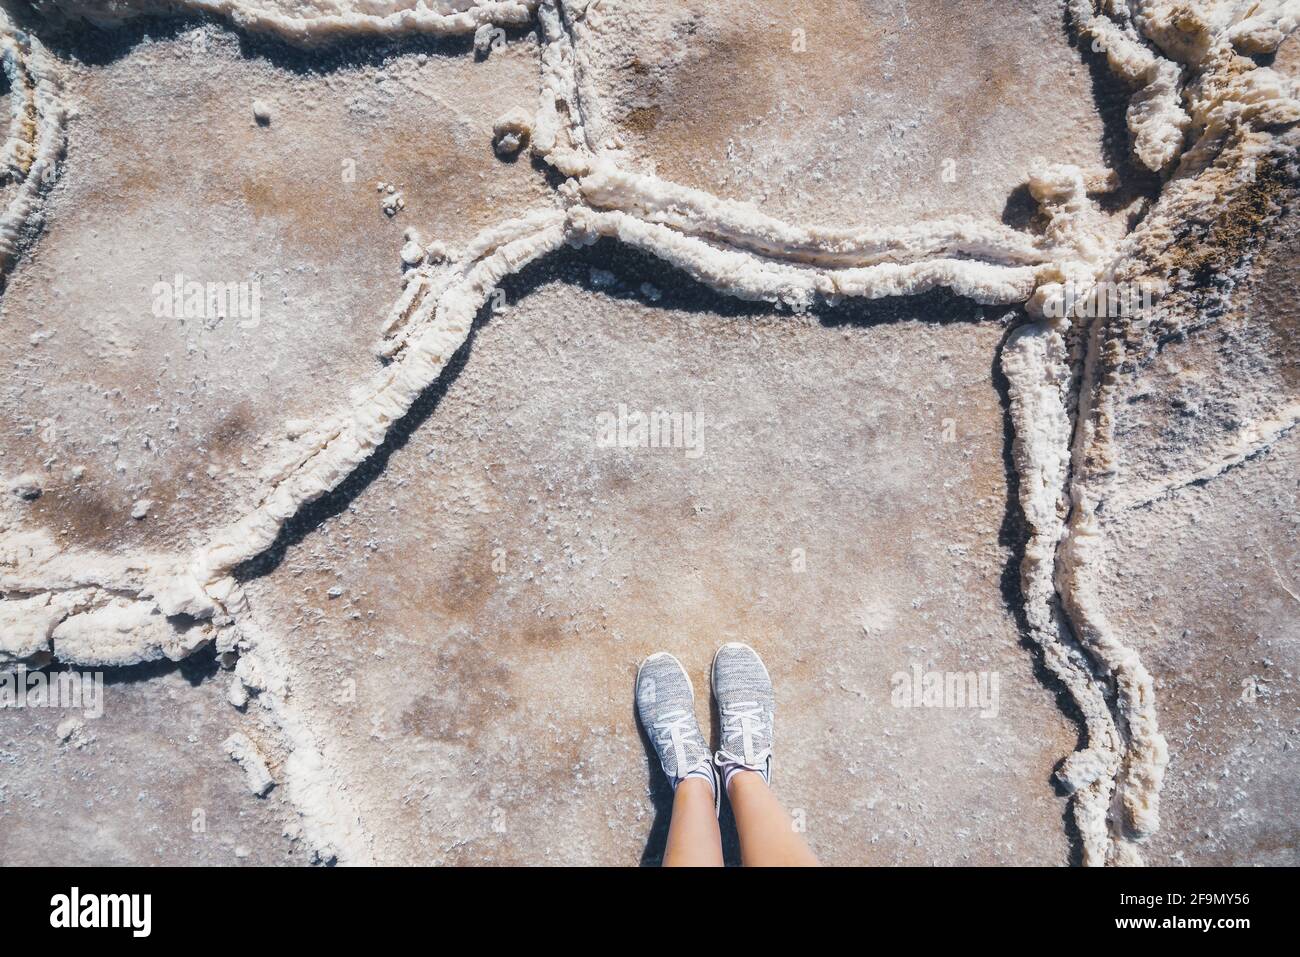 Une femme se tient debout sur des plateaux de sel dans le parc national de la Vallée de la mort. Vue du dessus du point de vue personnel. Salez les plats, texture gros plan Banque D'Images